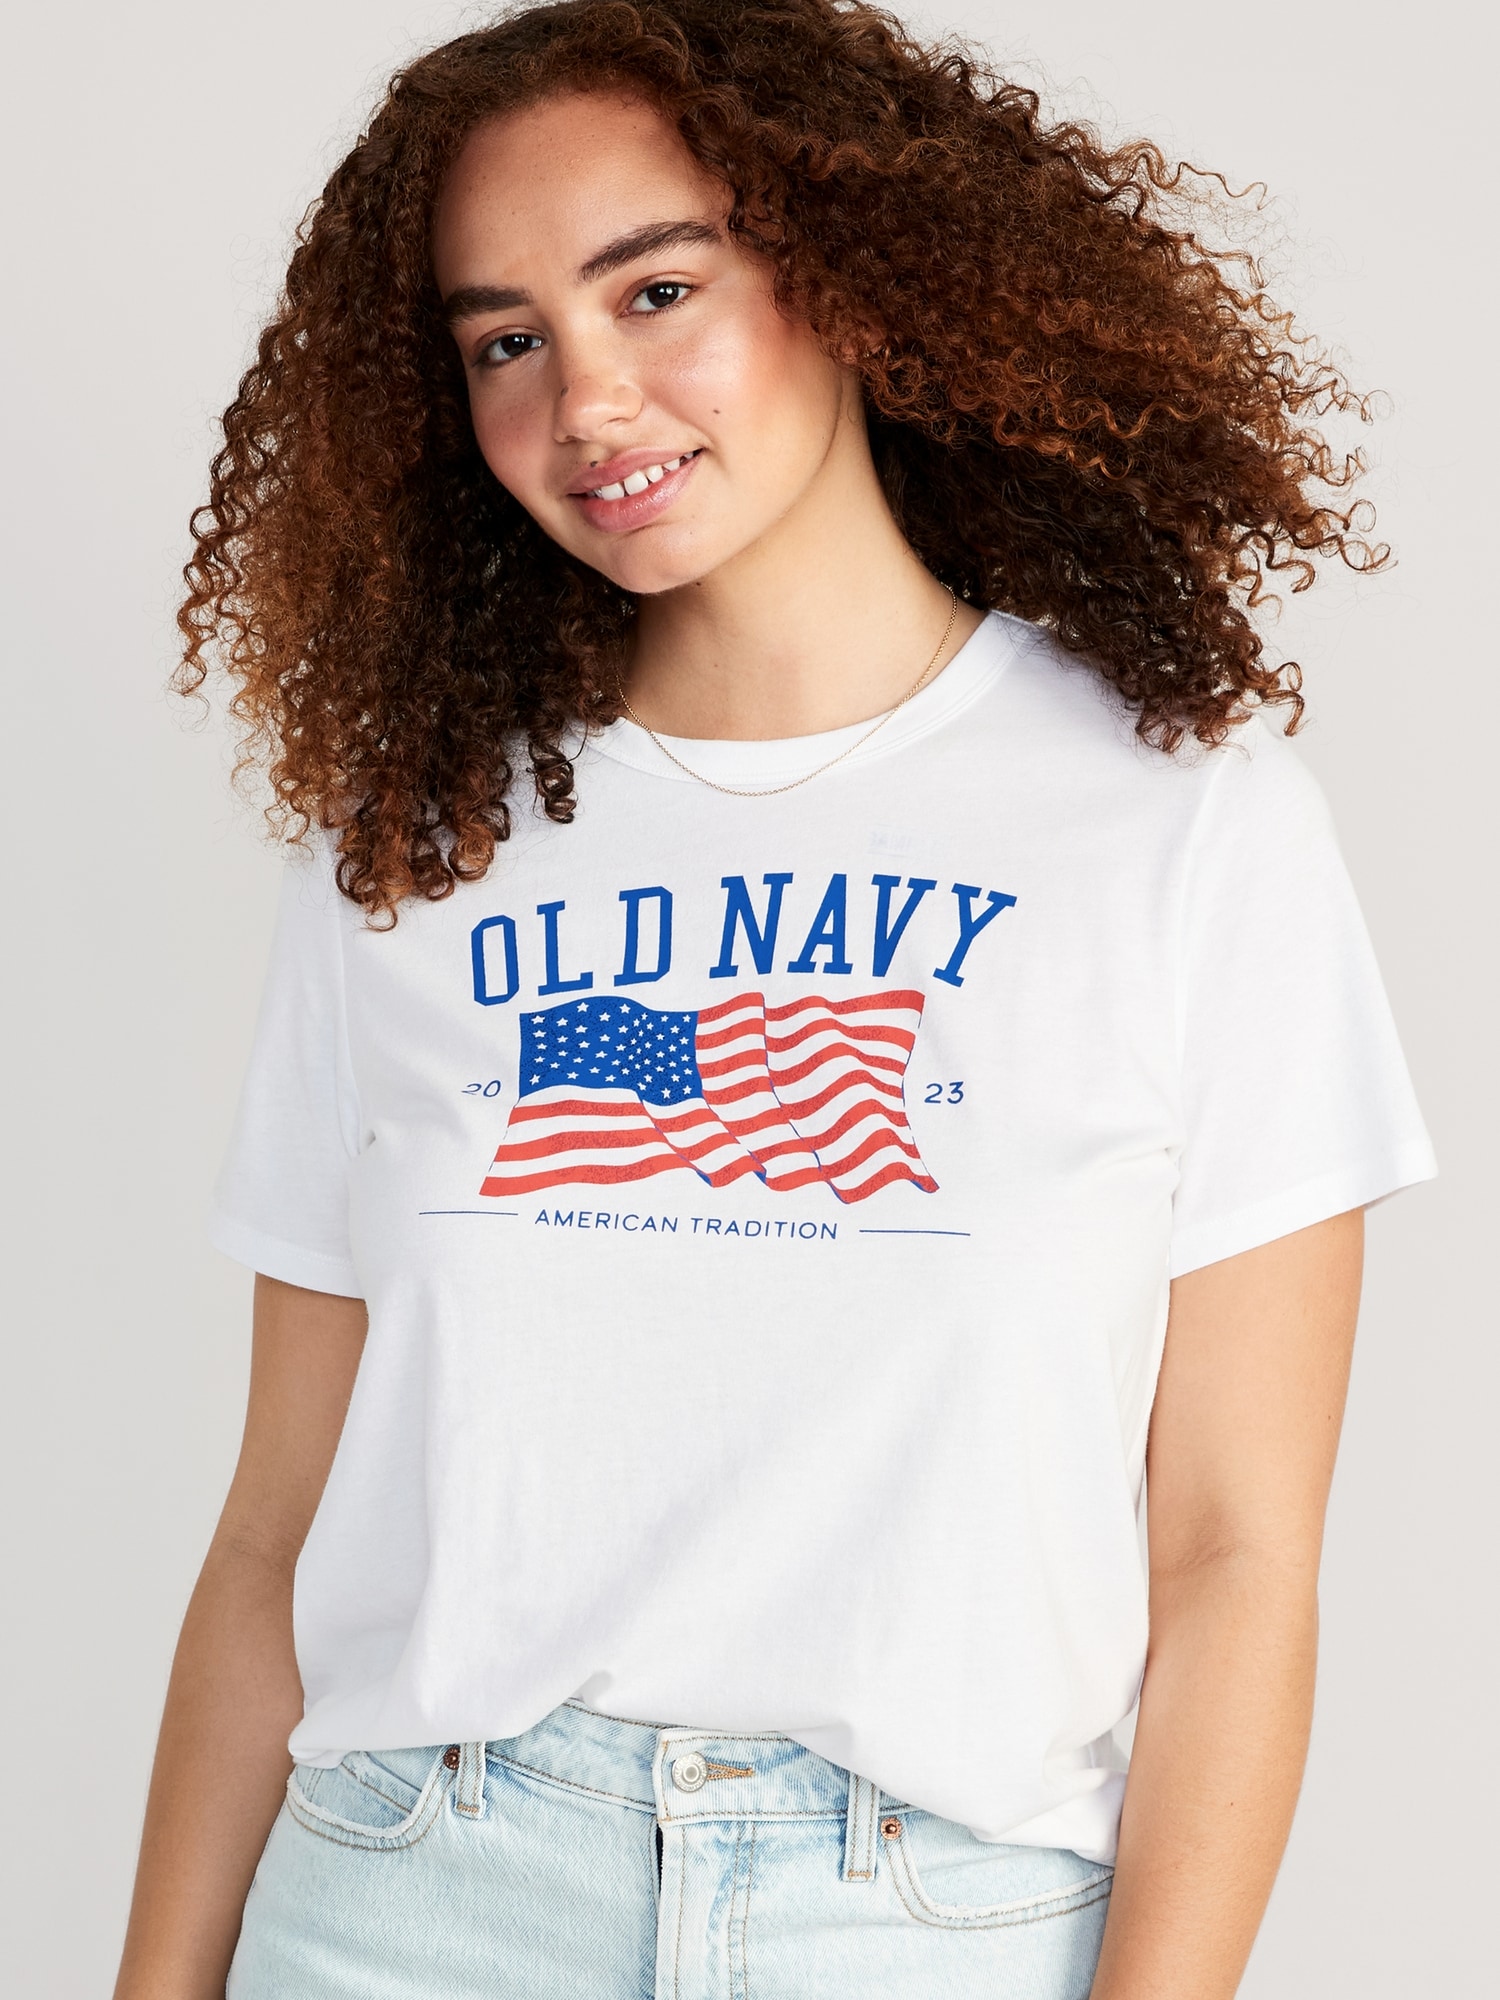 Old Navy, Shirts, Old Navy Flag Shirt